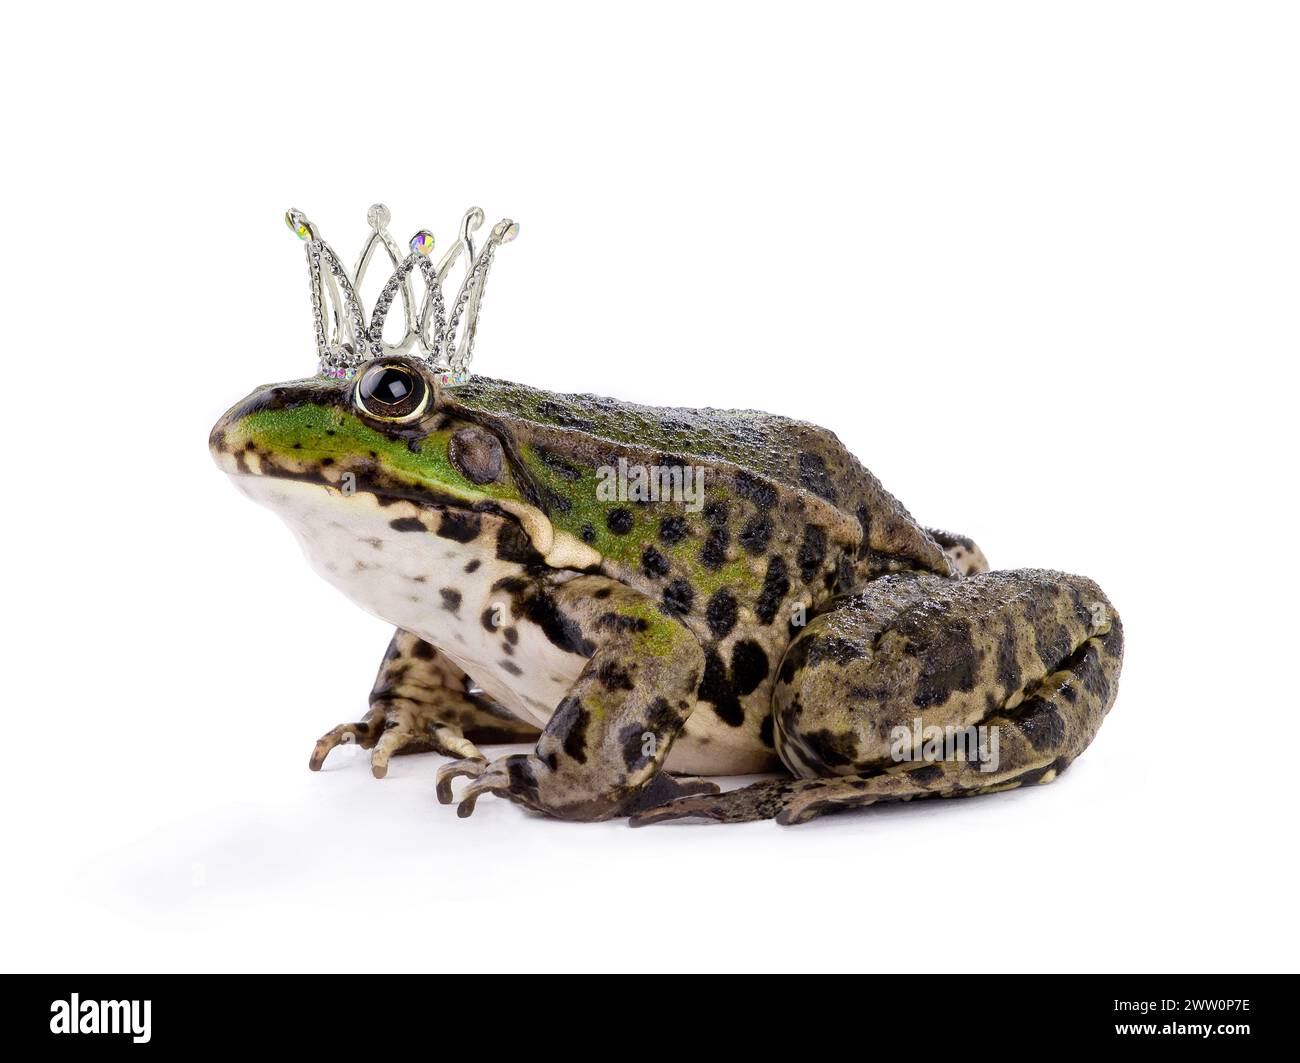 corona la rana isolata su uno sfondo bianco Foto Stock